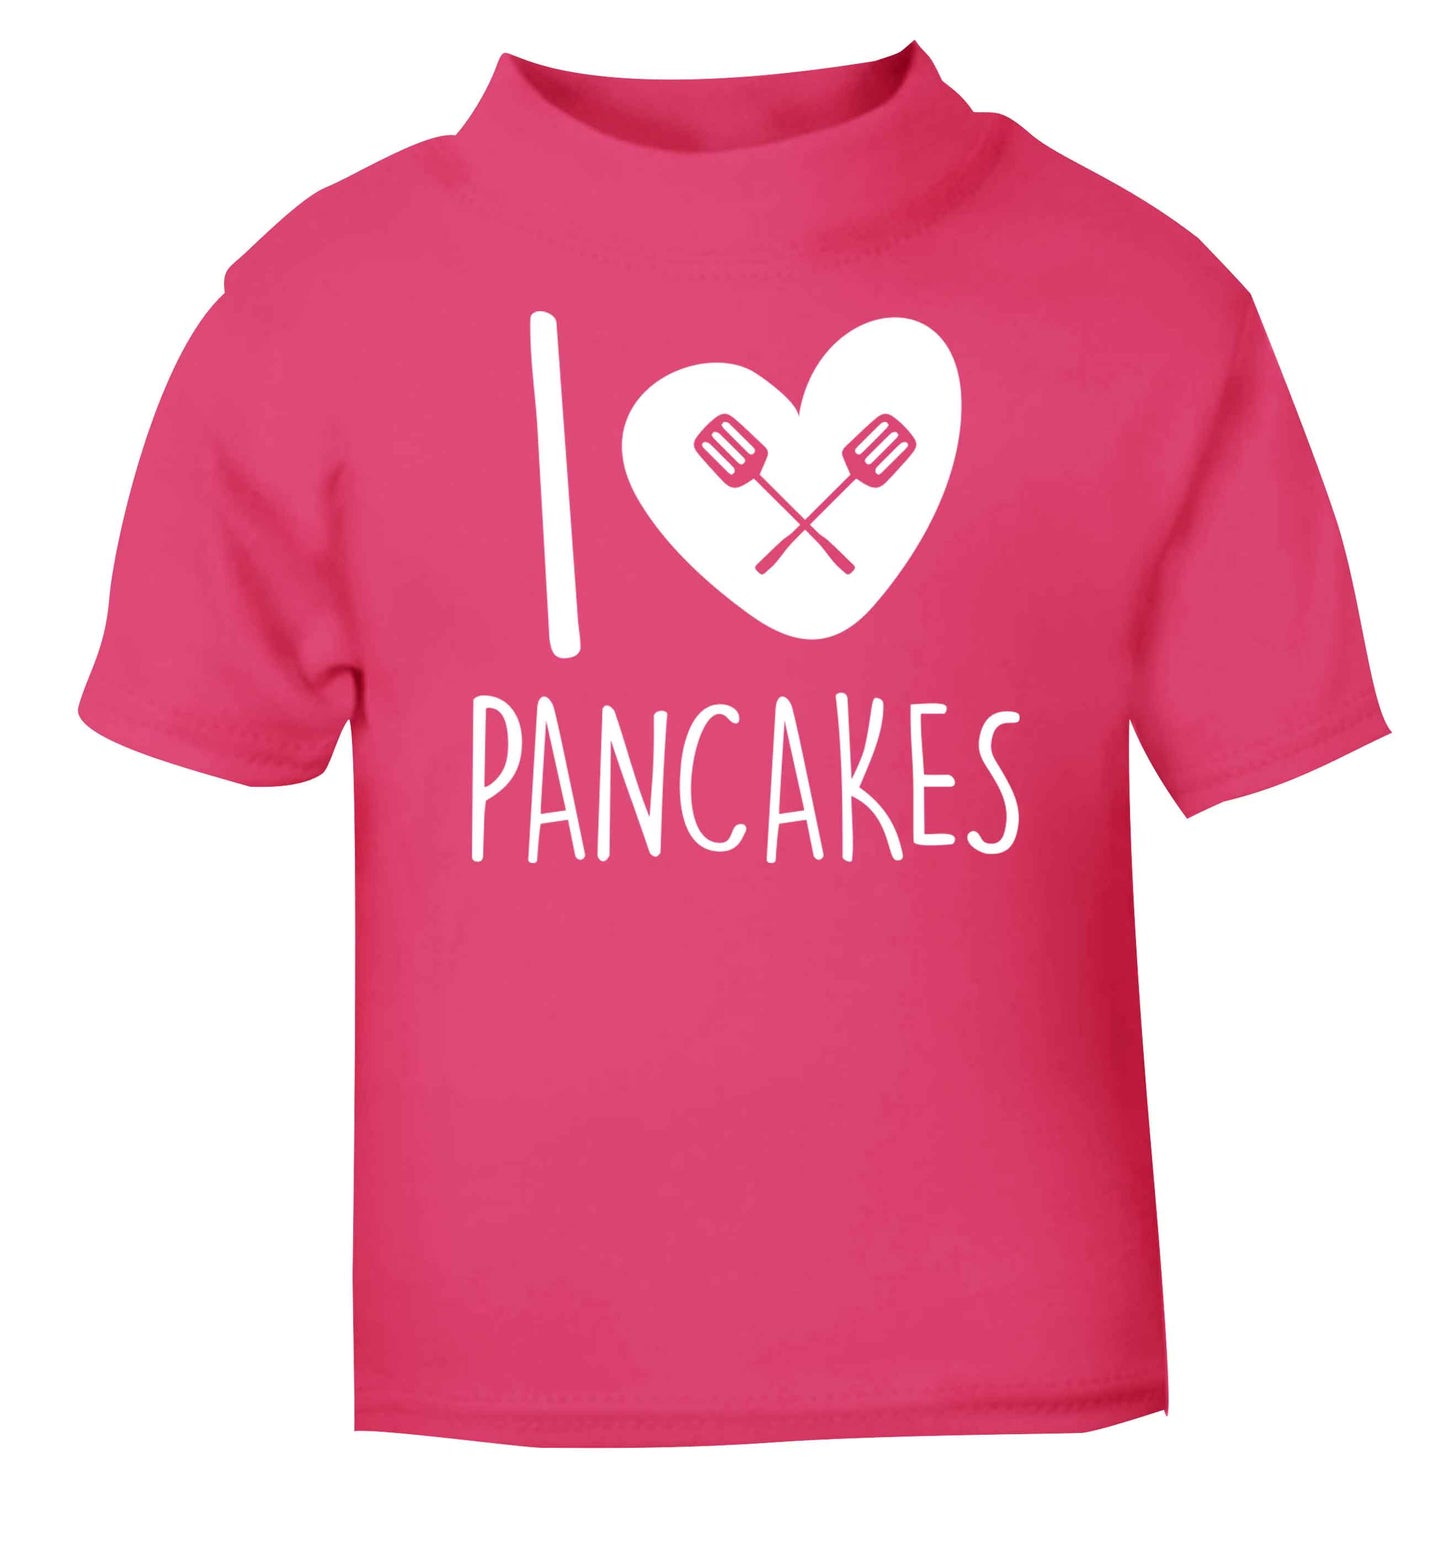 I love pancakes pink baby toddler Tshirt 2 Years